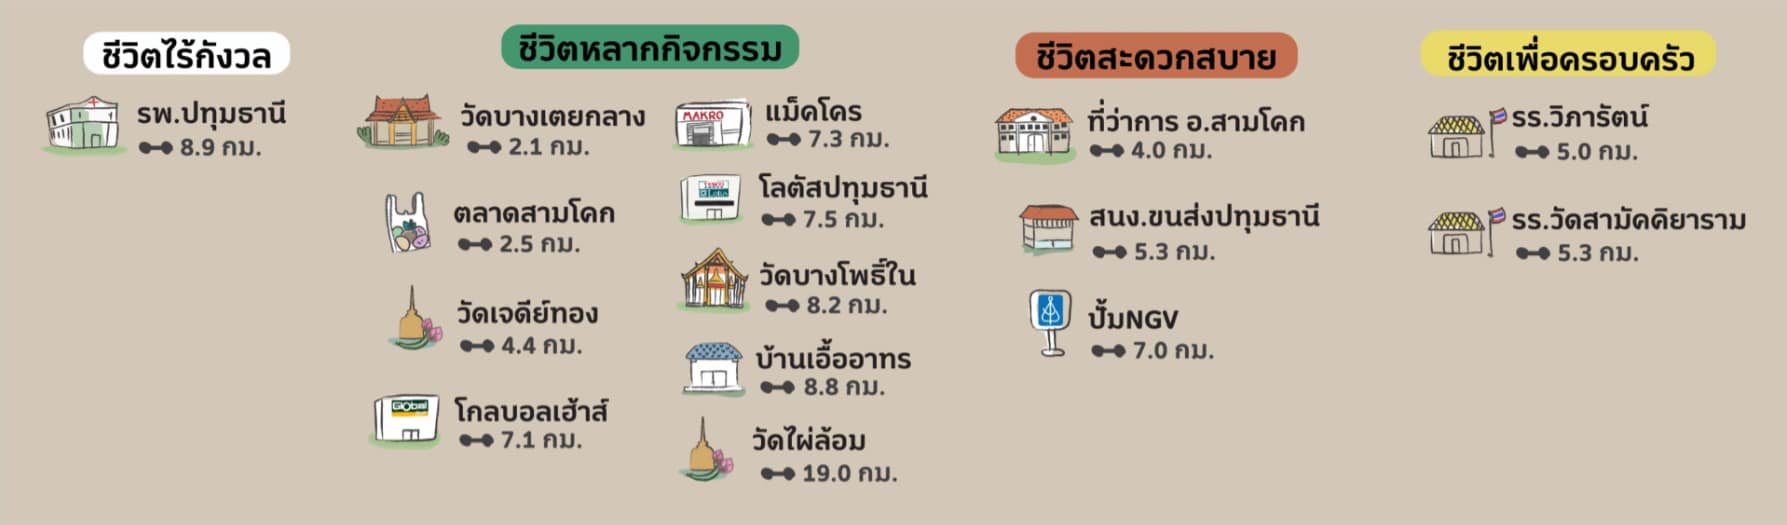 ภาพอื่นๆ ใน website ของโครงการภิรมย์ เมืองปทุม (Phirom Mueang Pathum) และ โครงการภิรมย์ ปทุม-สามโคก (Phirom Pathum-Samkhok) จาก บริษัท เจ แอนด์ เอ็น เอสเตท จำกัด (J&N Estate.Co.Ltd) 052